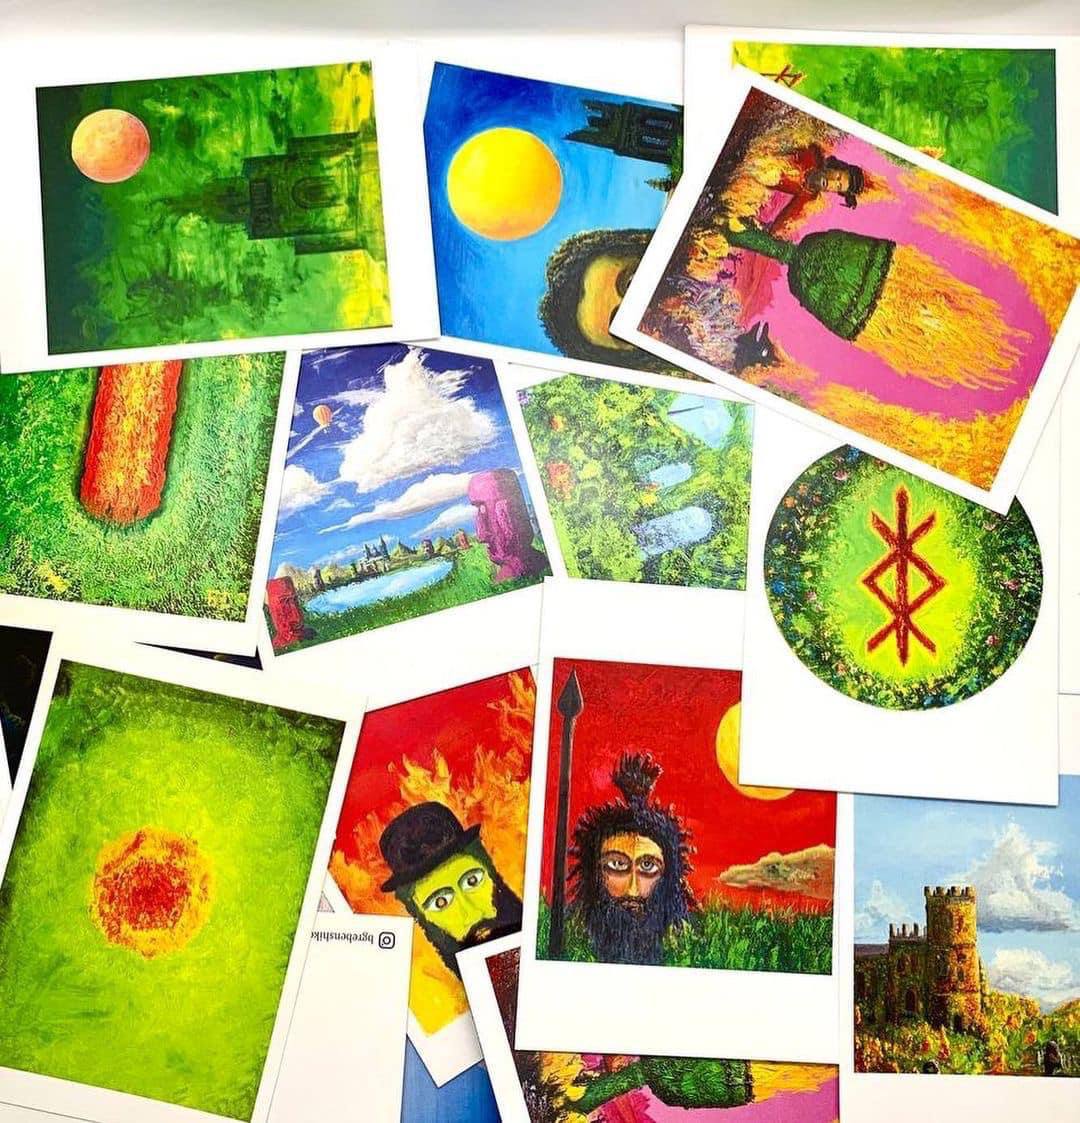 Postcards with paintings by Boris Grebenshikov